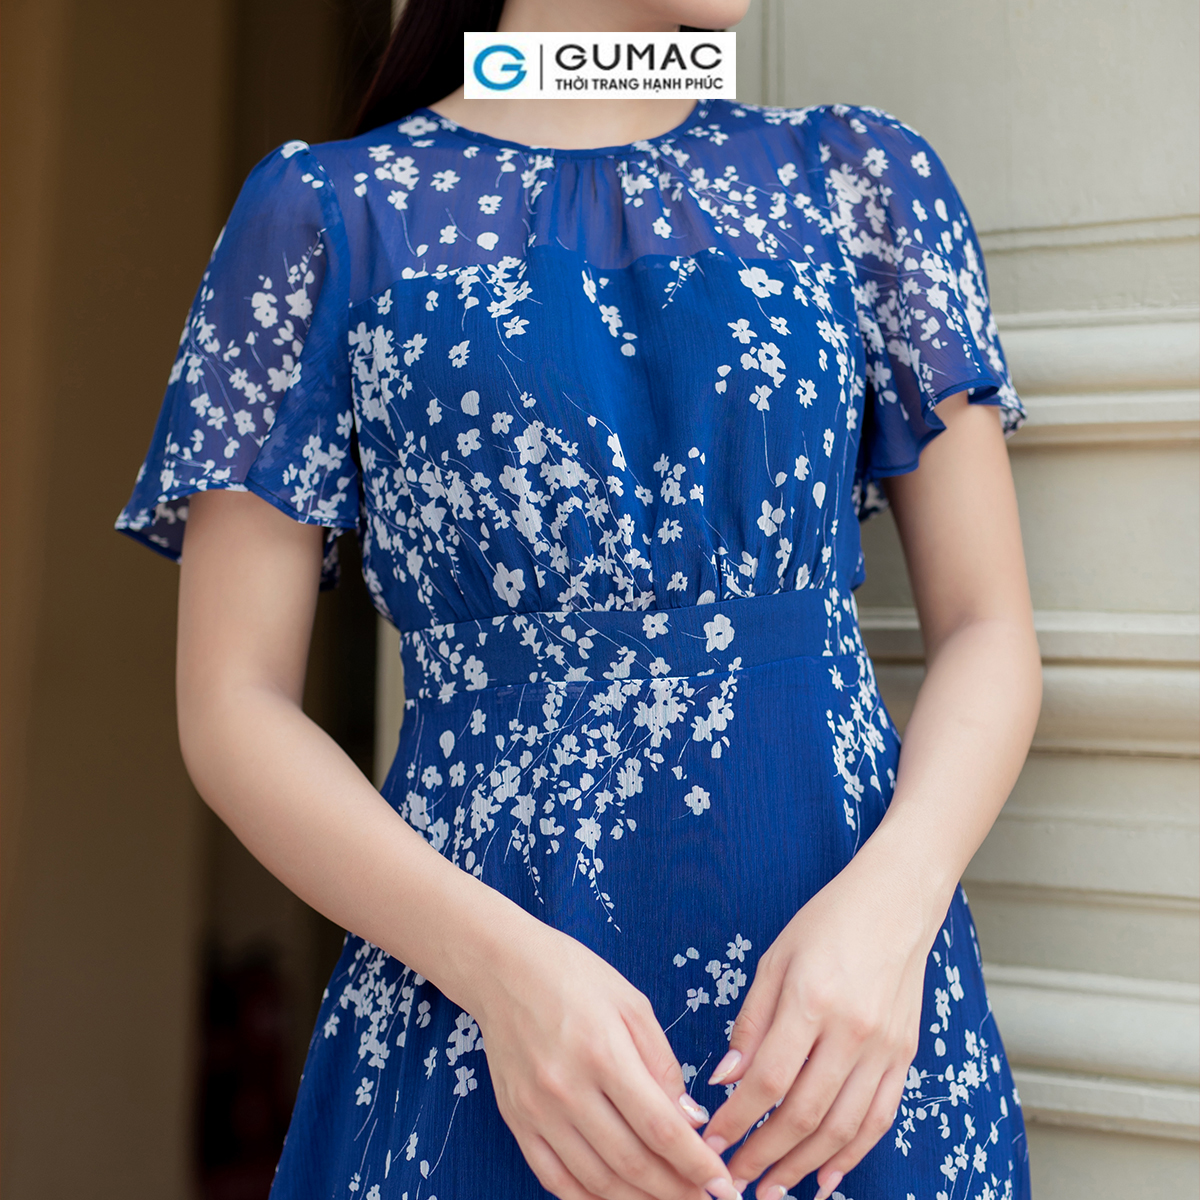 Đầm A xòe họa tiết hoa nữ tính thanh lịch thời trang GUMAC LDD0701